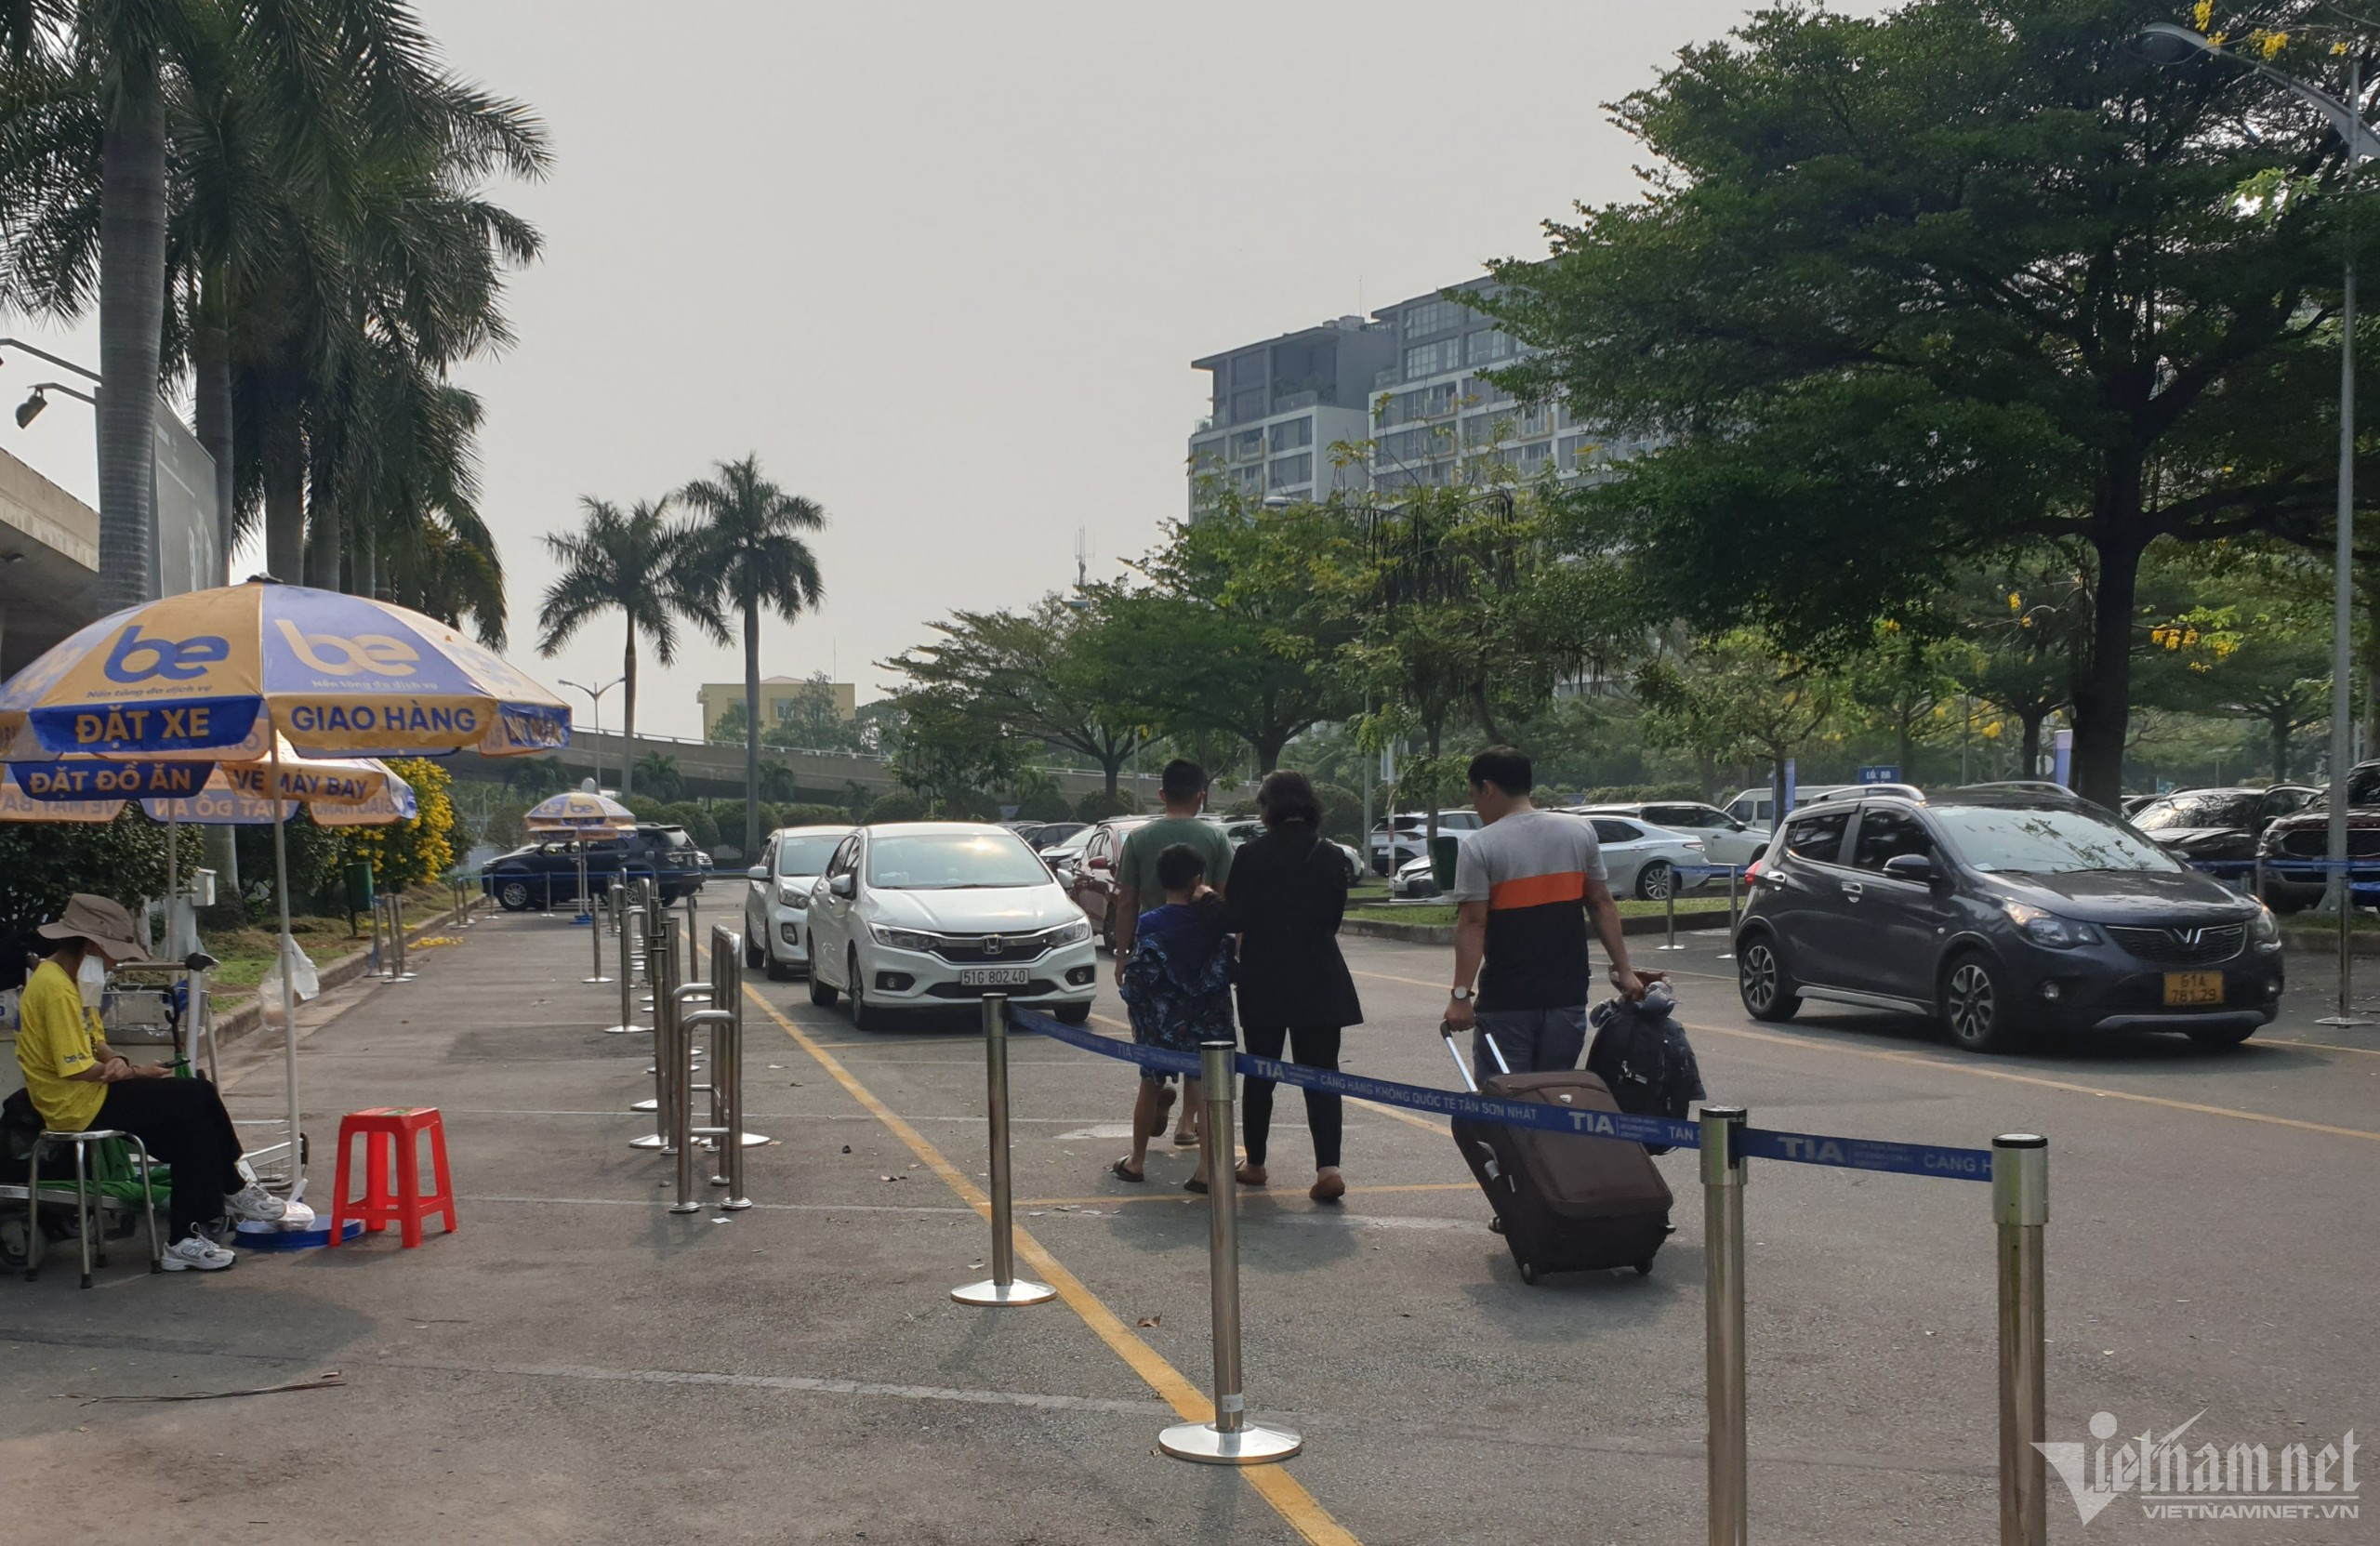 Khách đội nắng tìm bãi xe công nghệ ở sân bay Tân Sơn Nhất